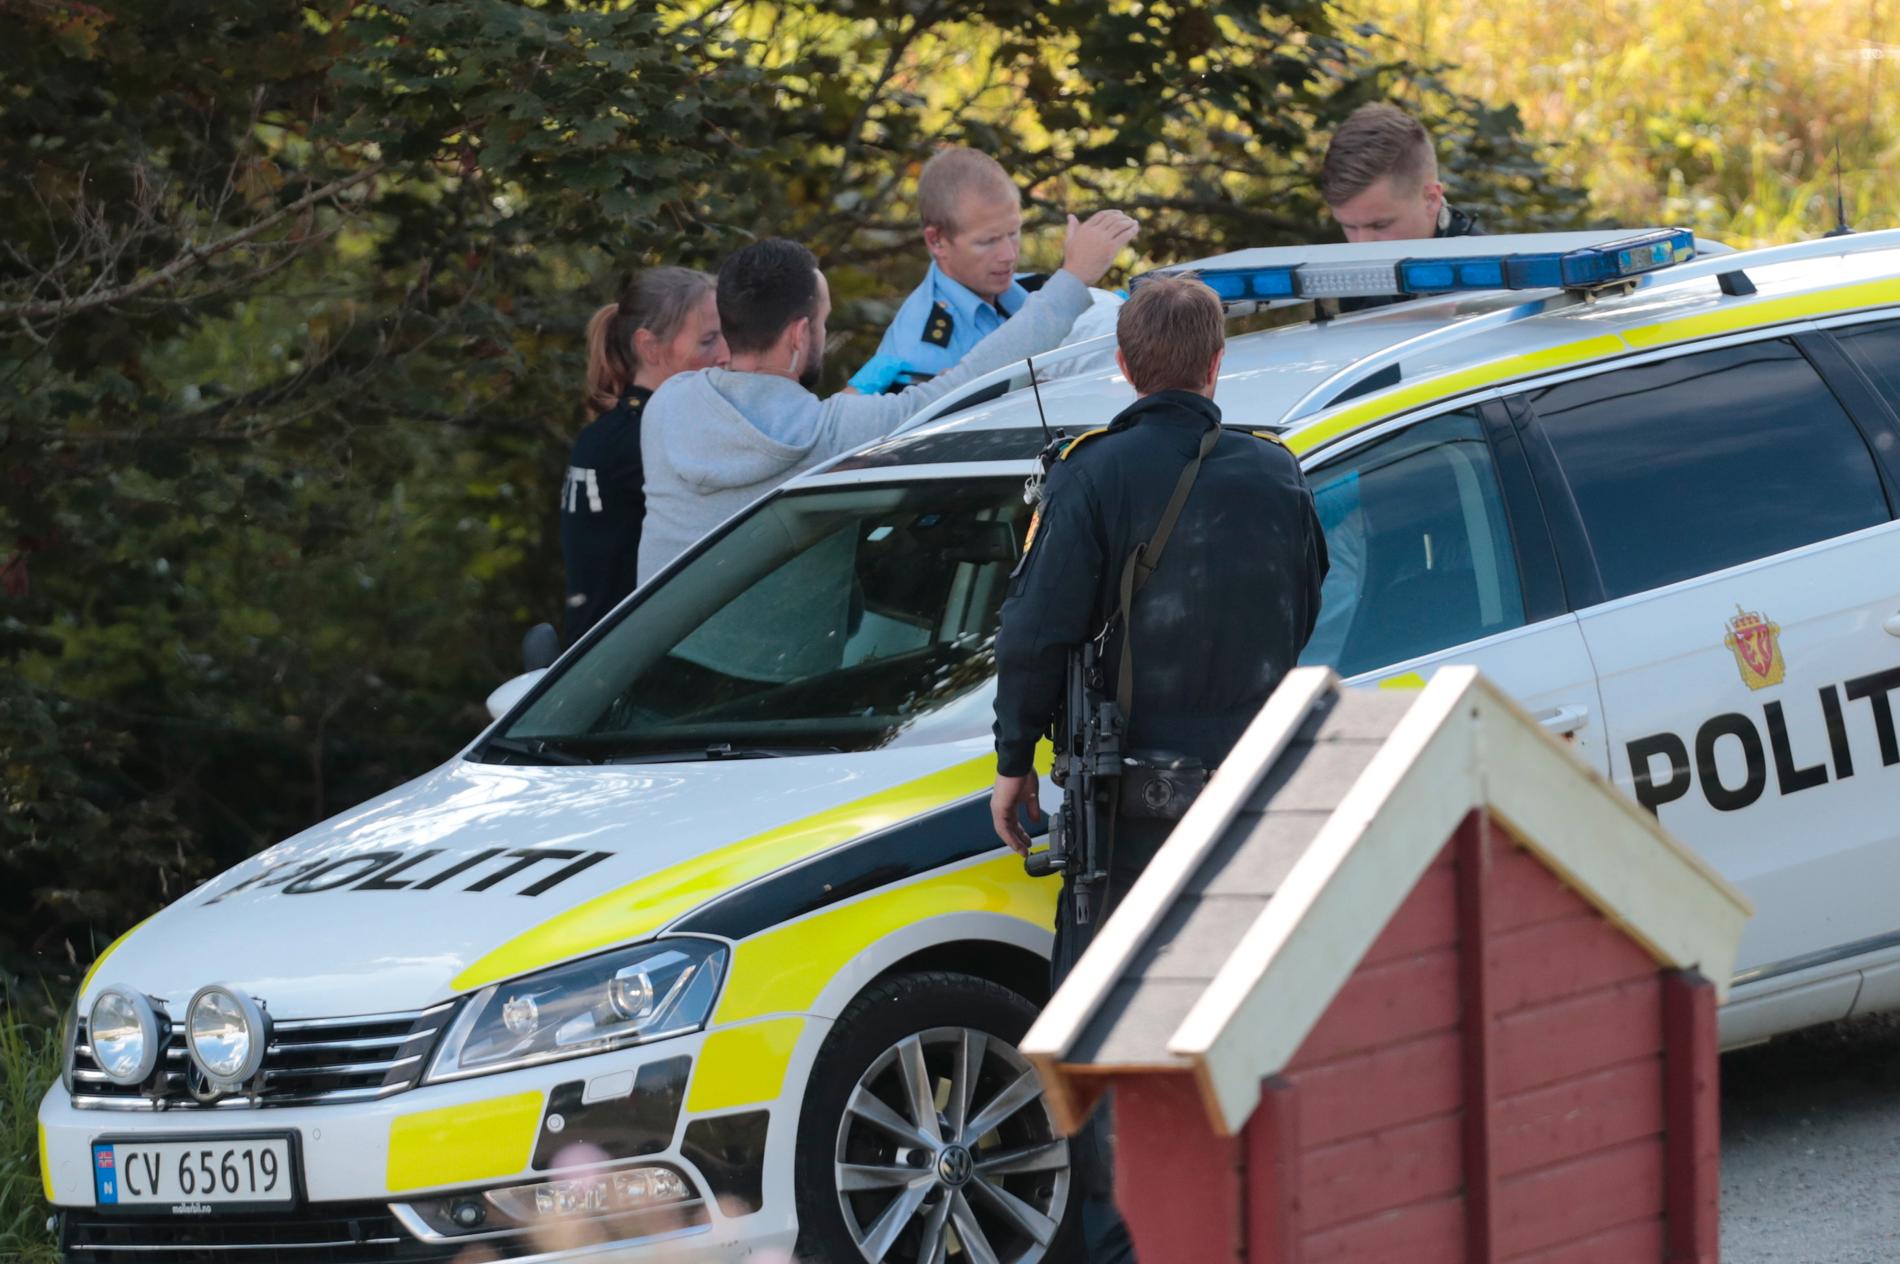 En person ble pågrepet av politiet etter en stor politiaksjon ved Feiring i Eidsvoll mandag.
Foto: Lise Åserud / NTB scanpix